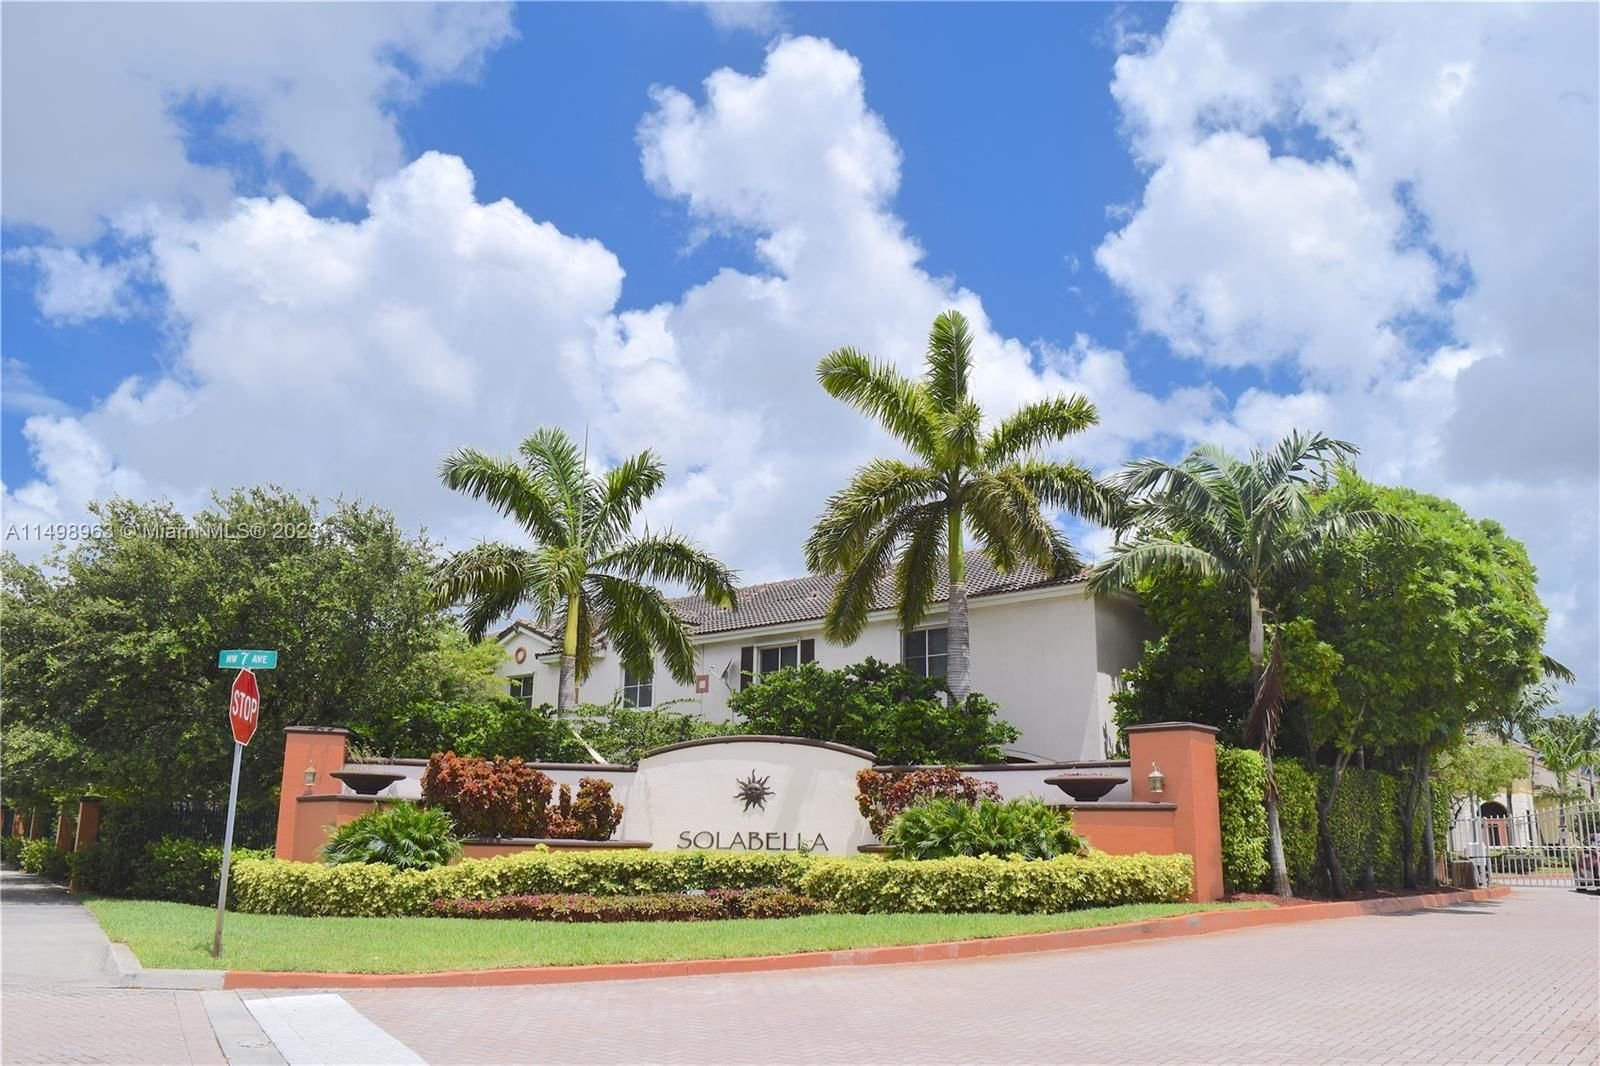 Real estate property located at , Miami-Dade County, SOLABELLA CONDO, Miami Gardens, FL